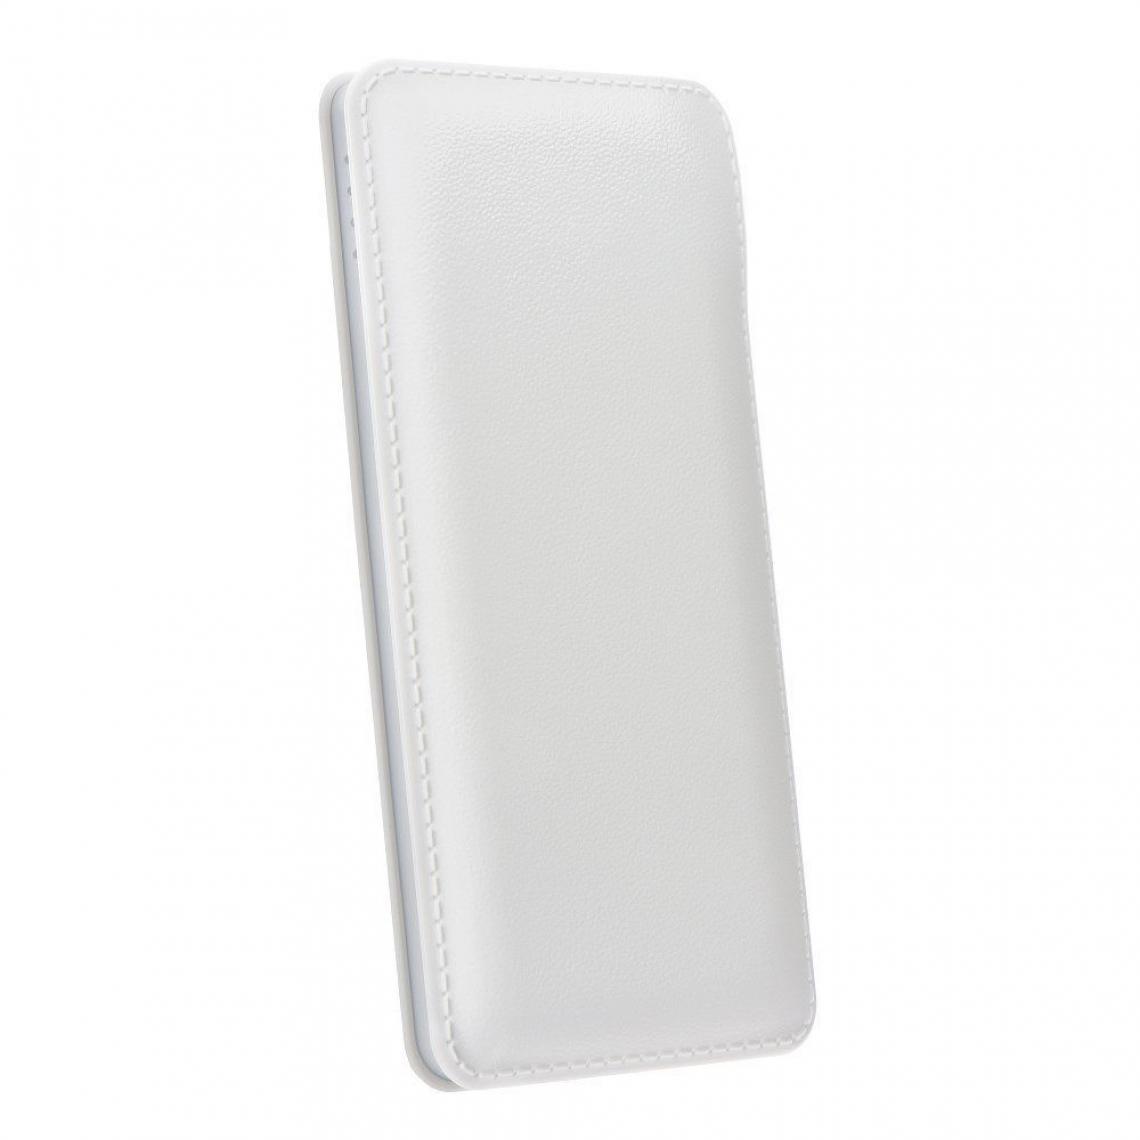 Ozzzo - Chargeur batterie externe 10000mAh powerbank ozzzo blanc pour Samsung Galaxy A52 5G - Autres accessoires smartphone